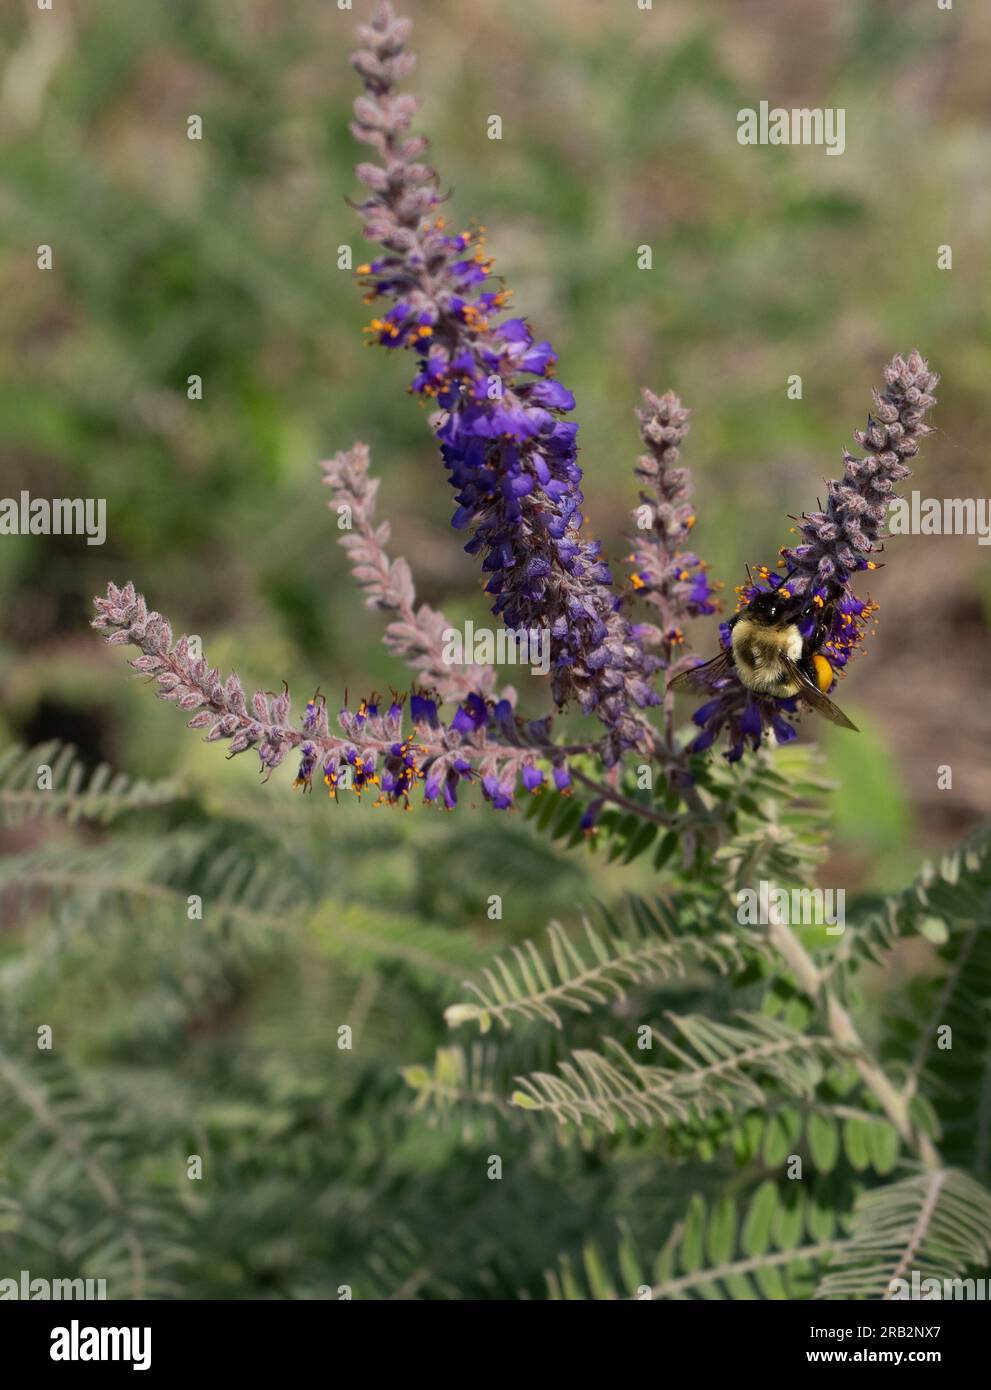 Hummeln mit vollen Pollenkörben sammeln mehr Pollen aus violetten Blüten auf einer Bleipflanze oder Amorpha canescens in Minnesota. Stockfoto